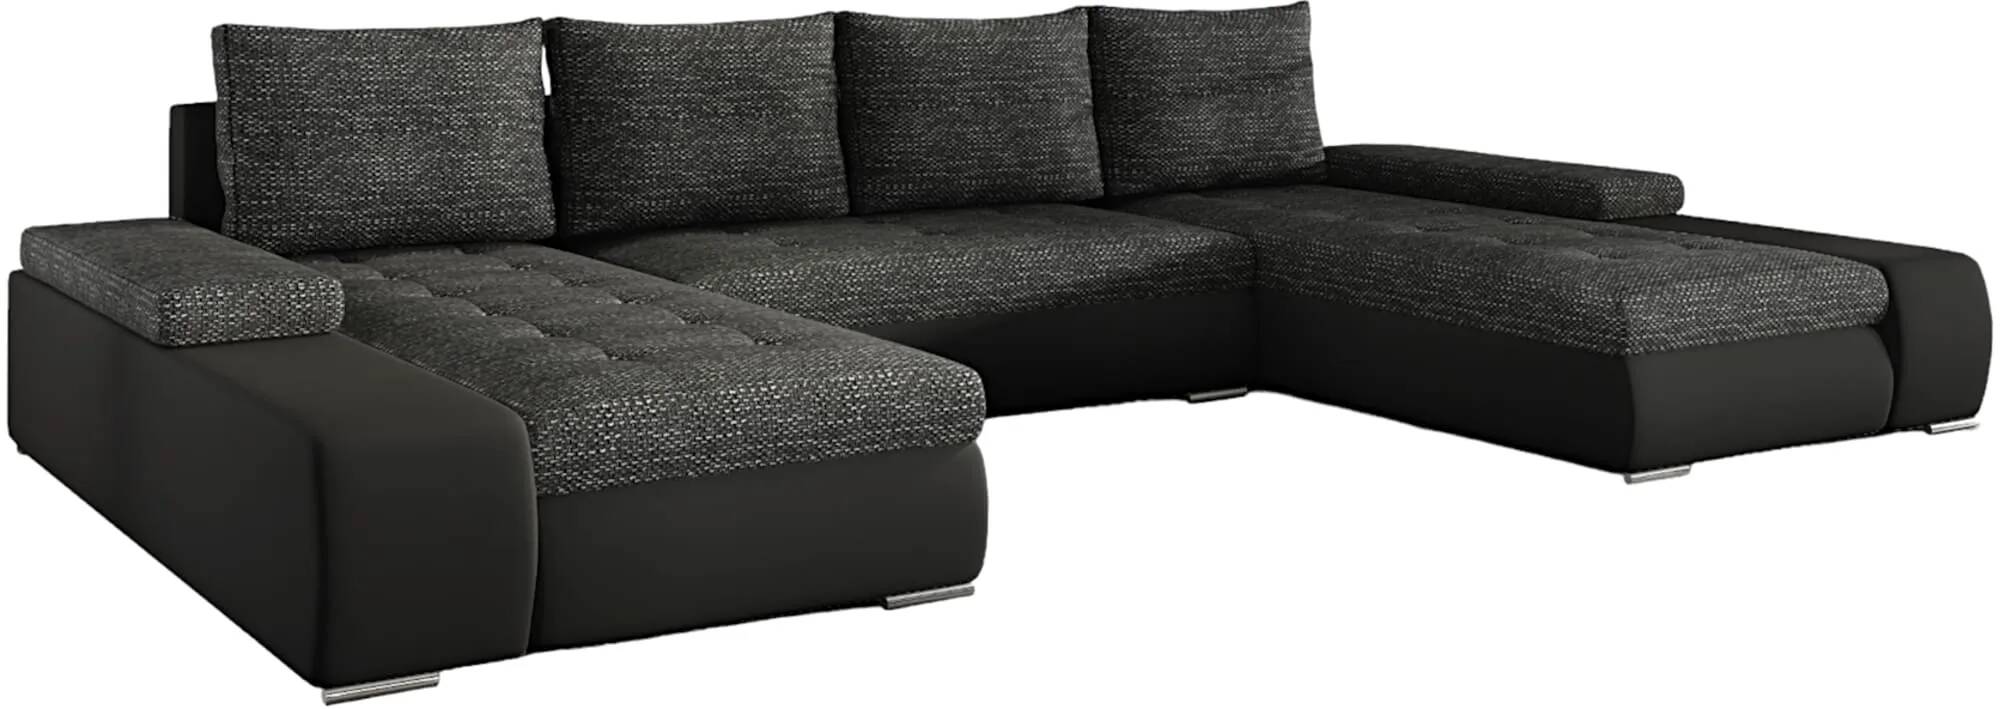 Canapé d'angle convertible en tissu chiné gris foncé et simili cuir noir